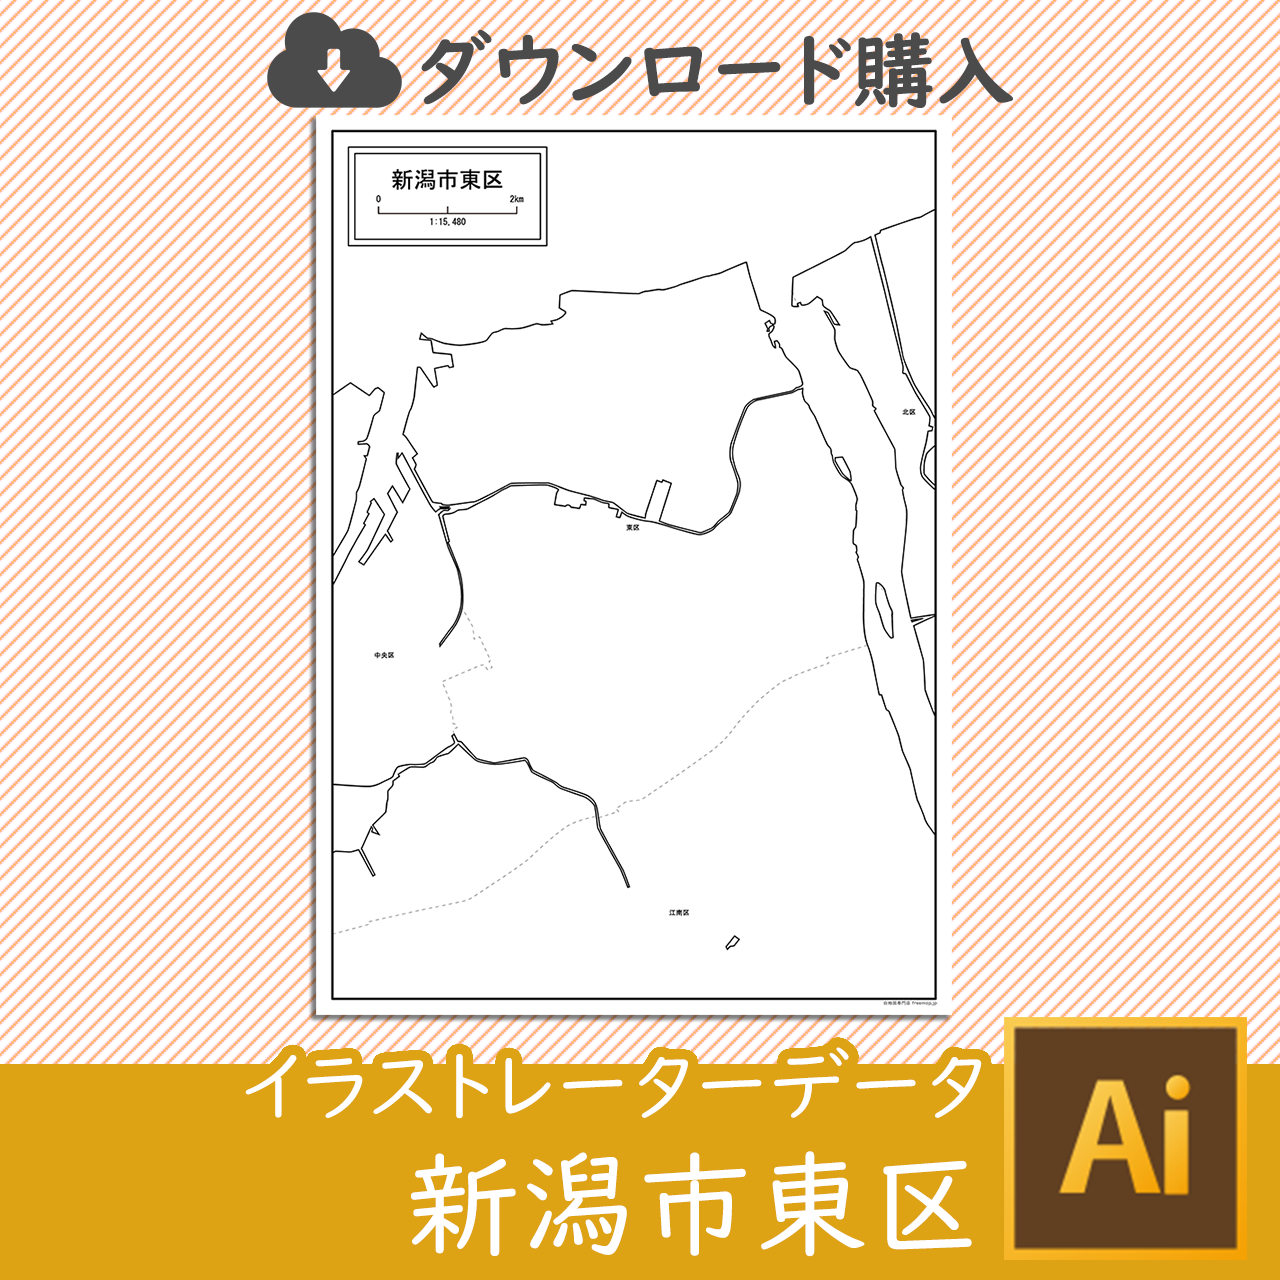 新潟市東区のaiデータのサムネイル画像